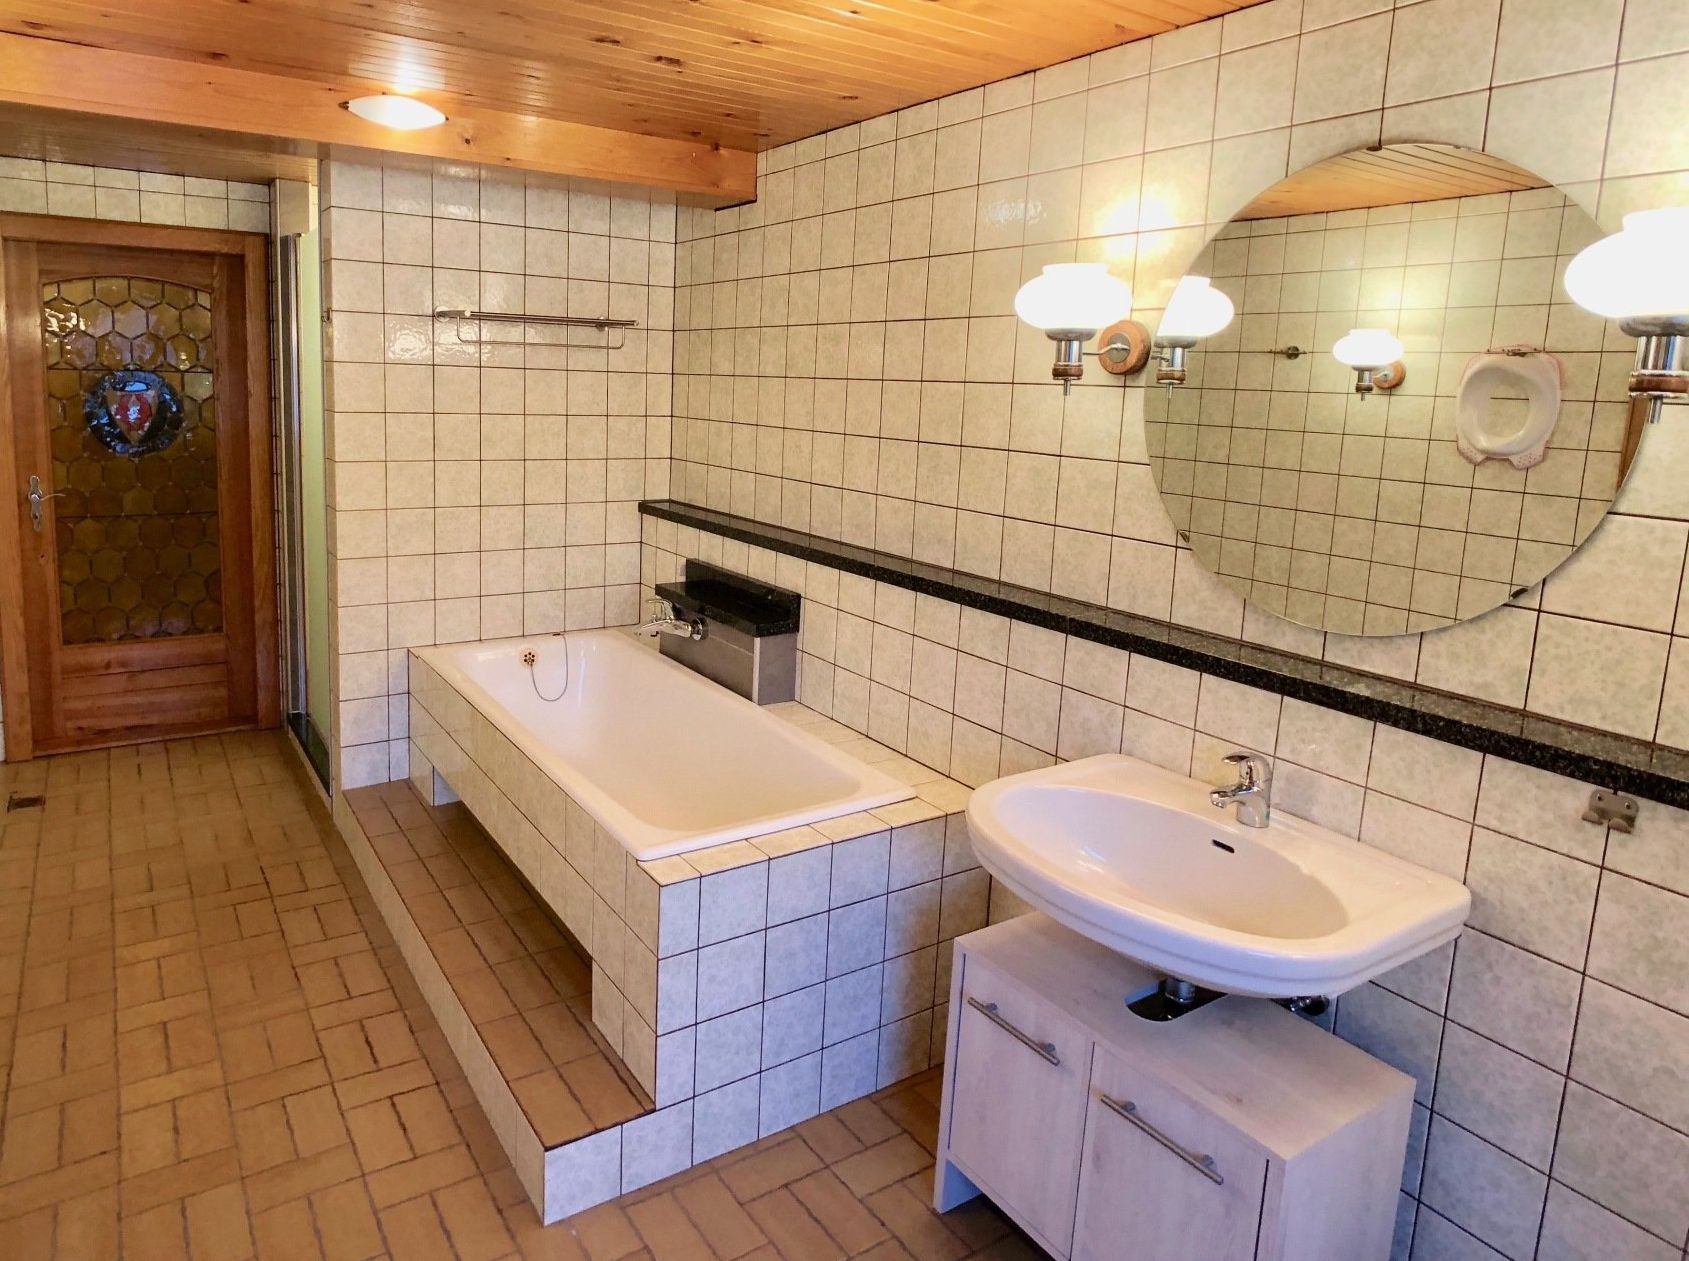 Im Badezimmer kann man ein entspannendes Vollbad nehmen...<br>(Bild: M. Winkelmann)